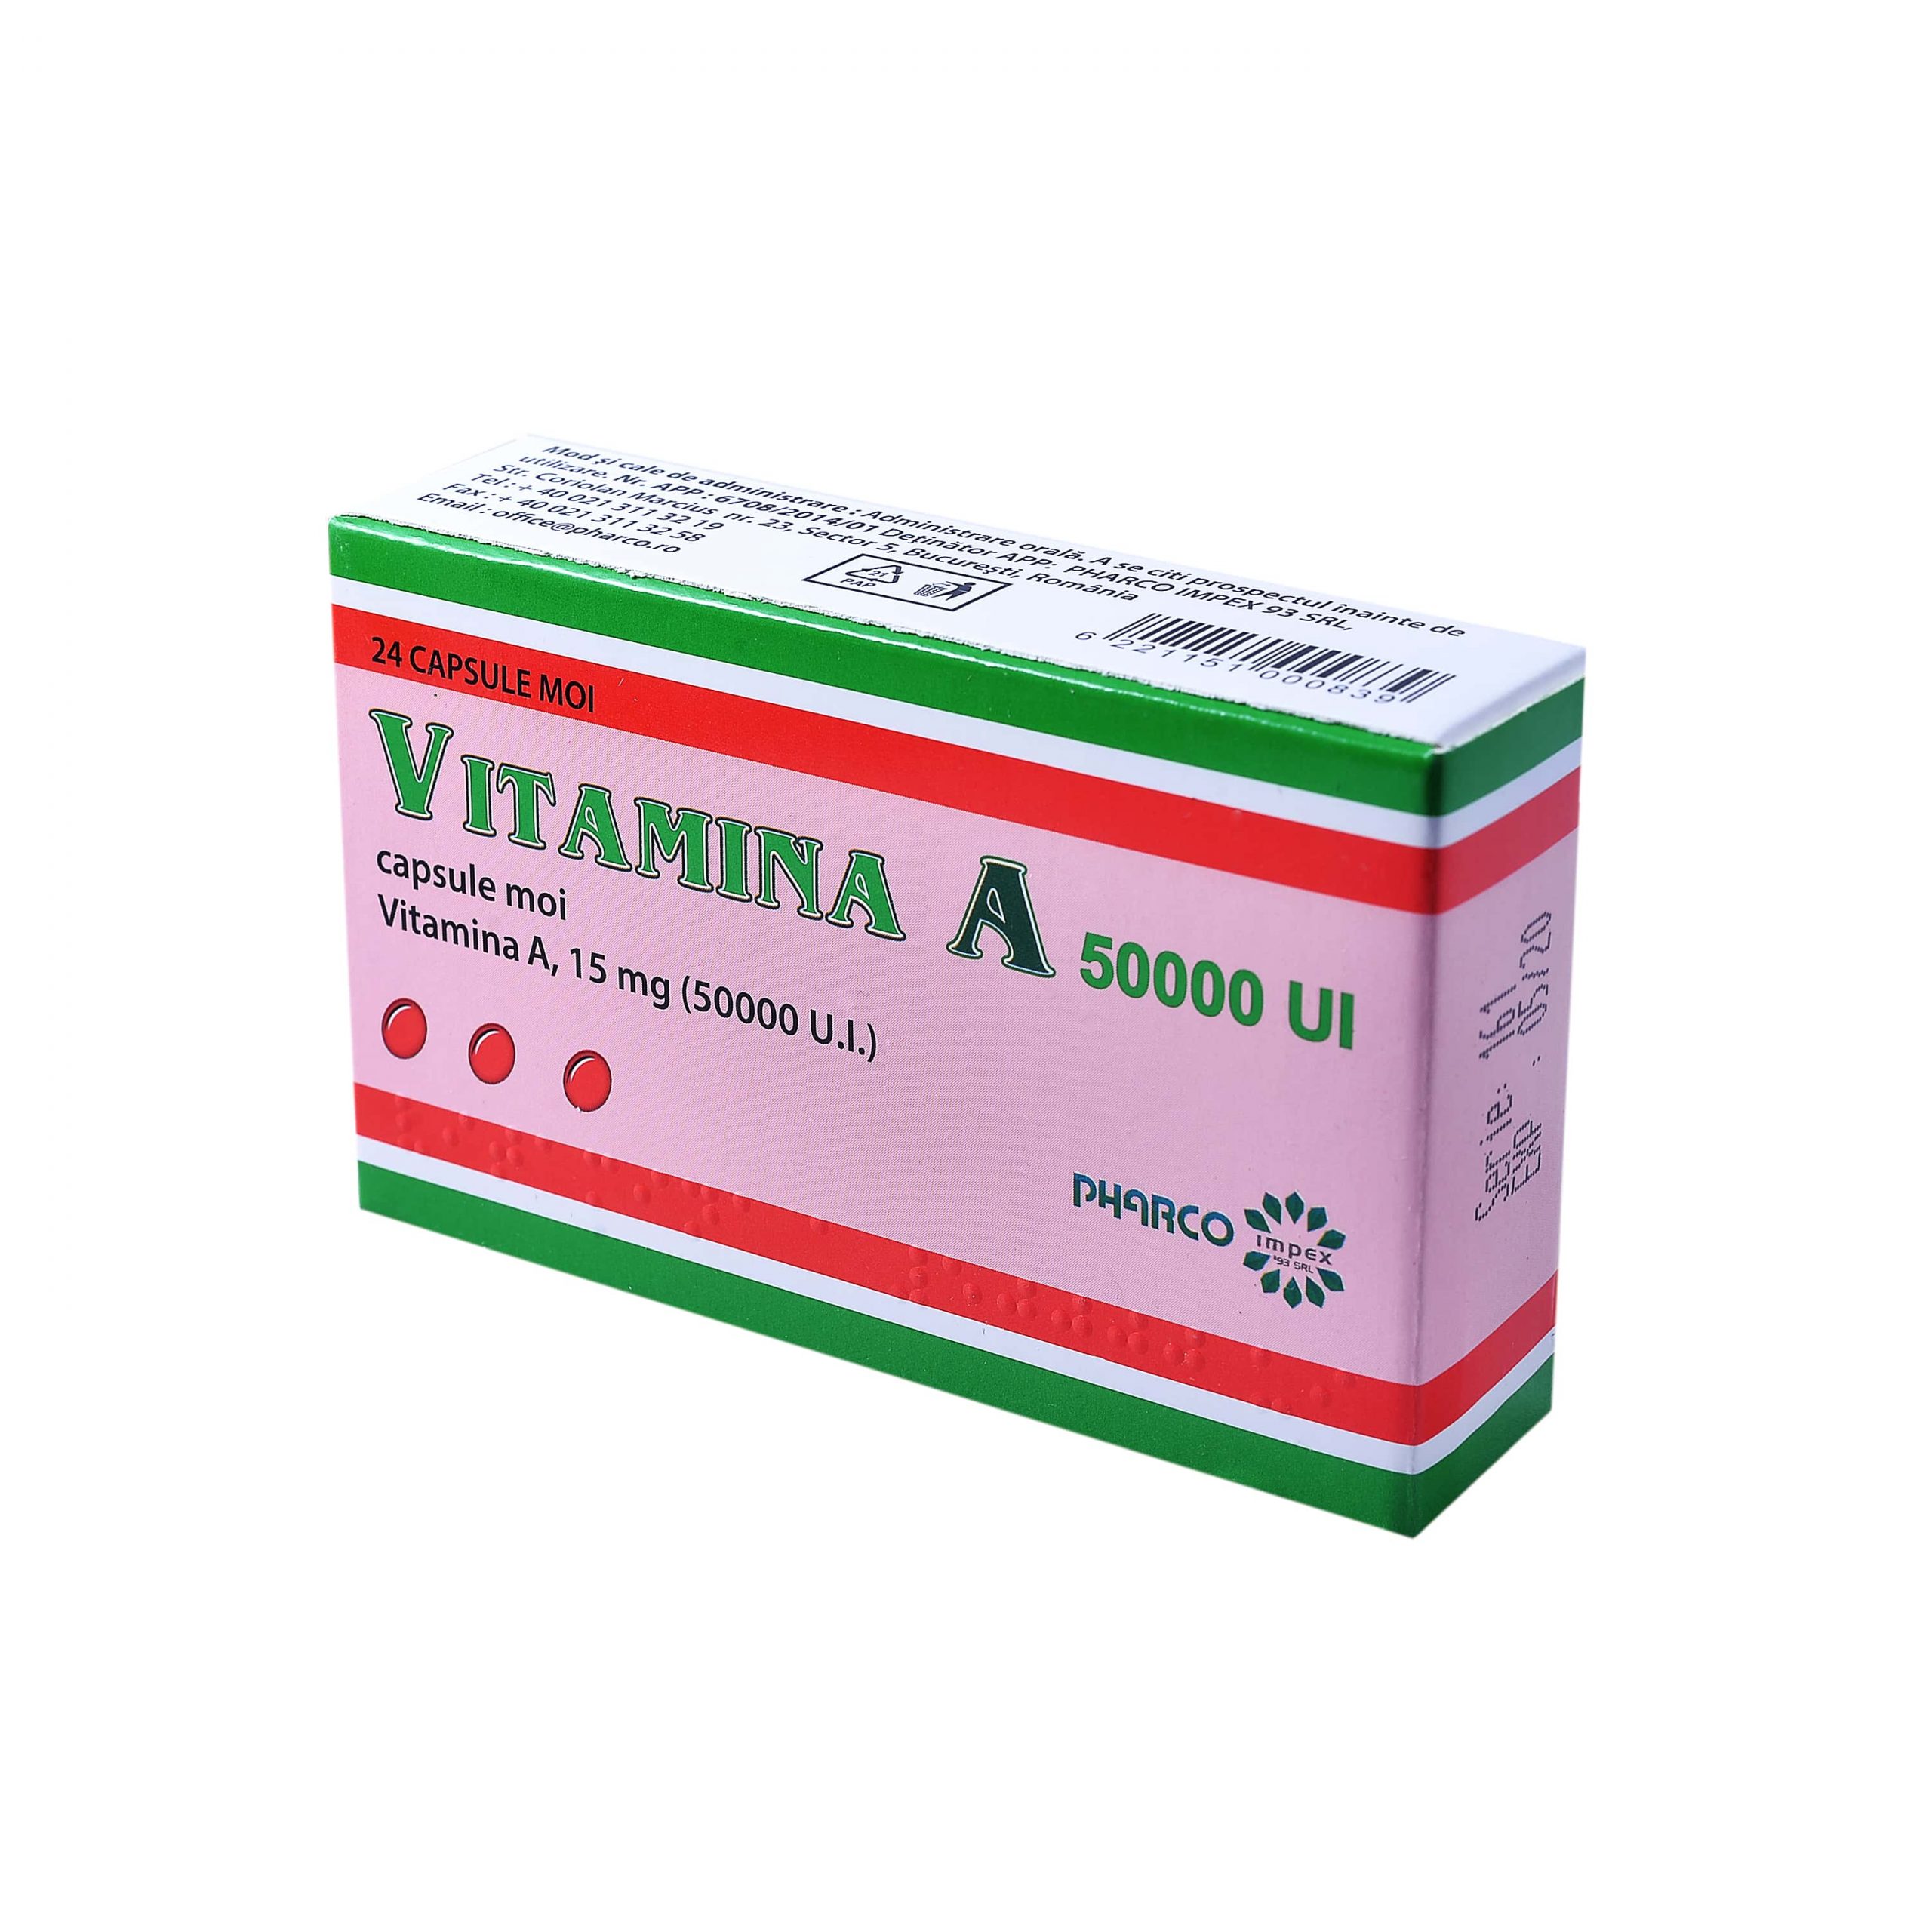 vitamine romania